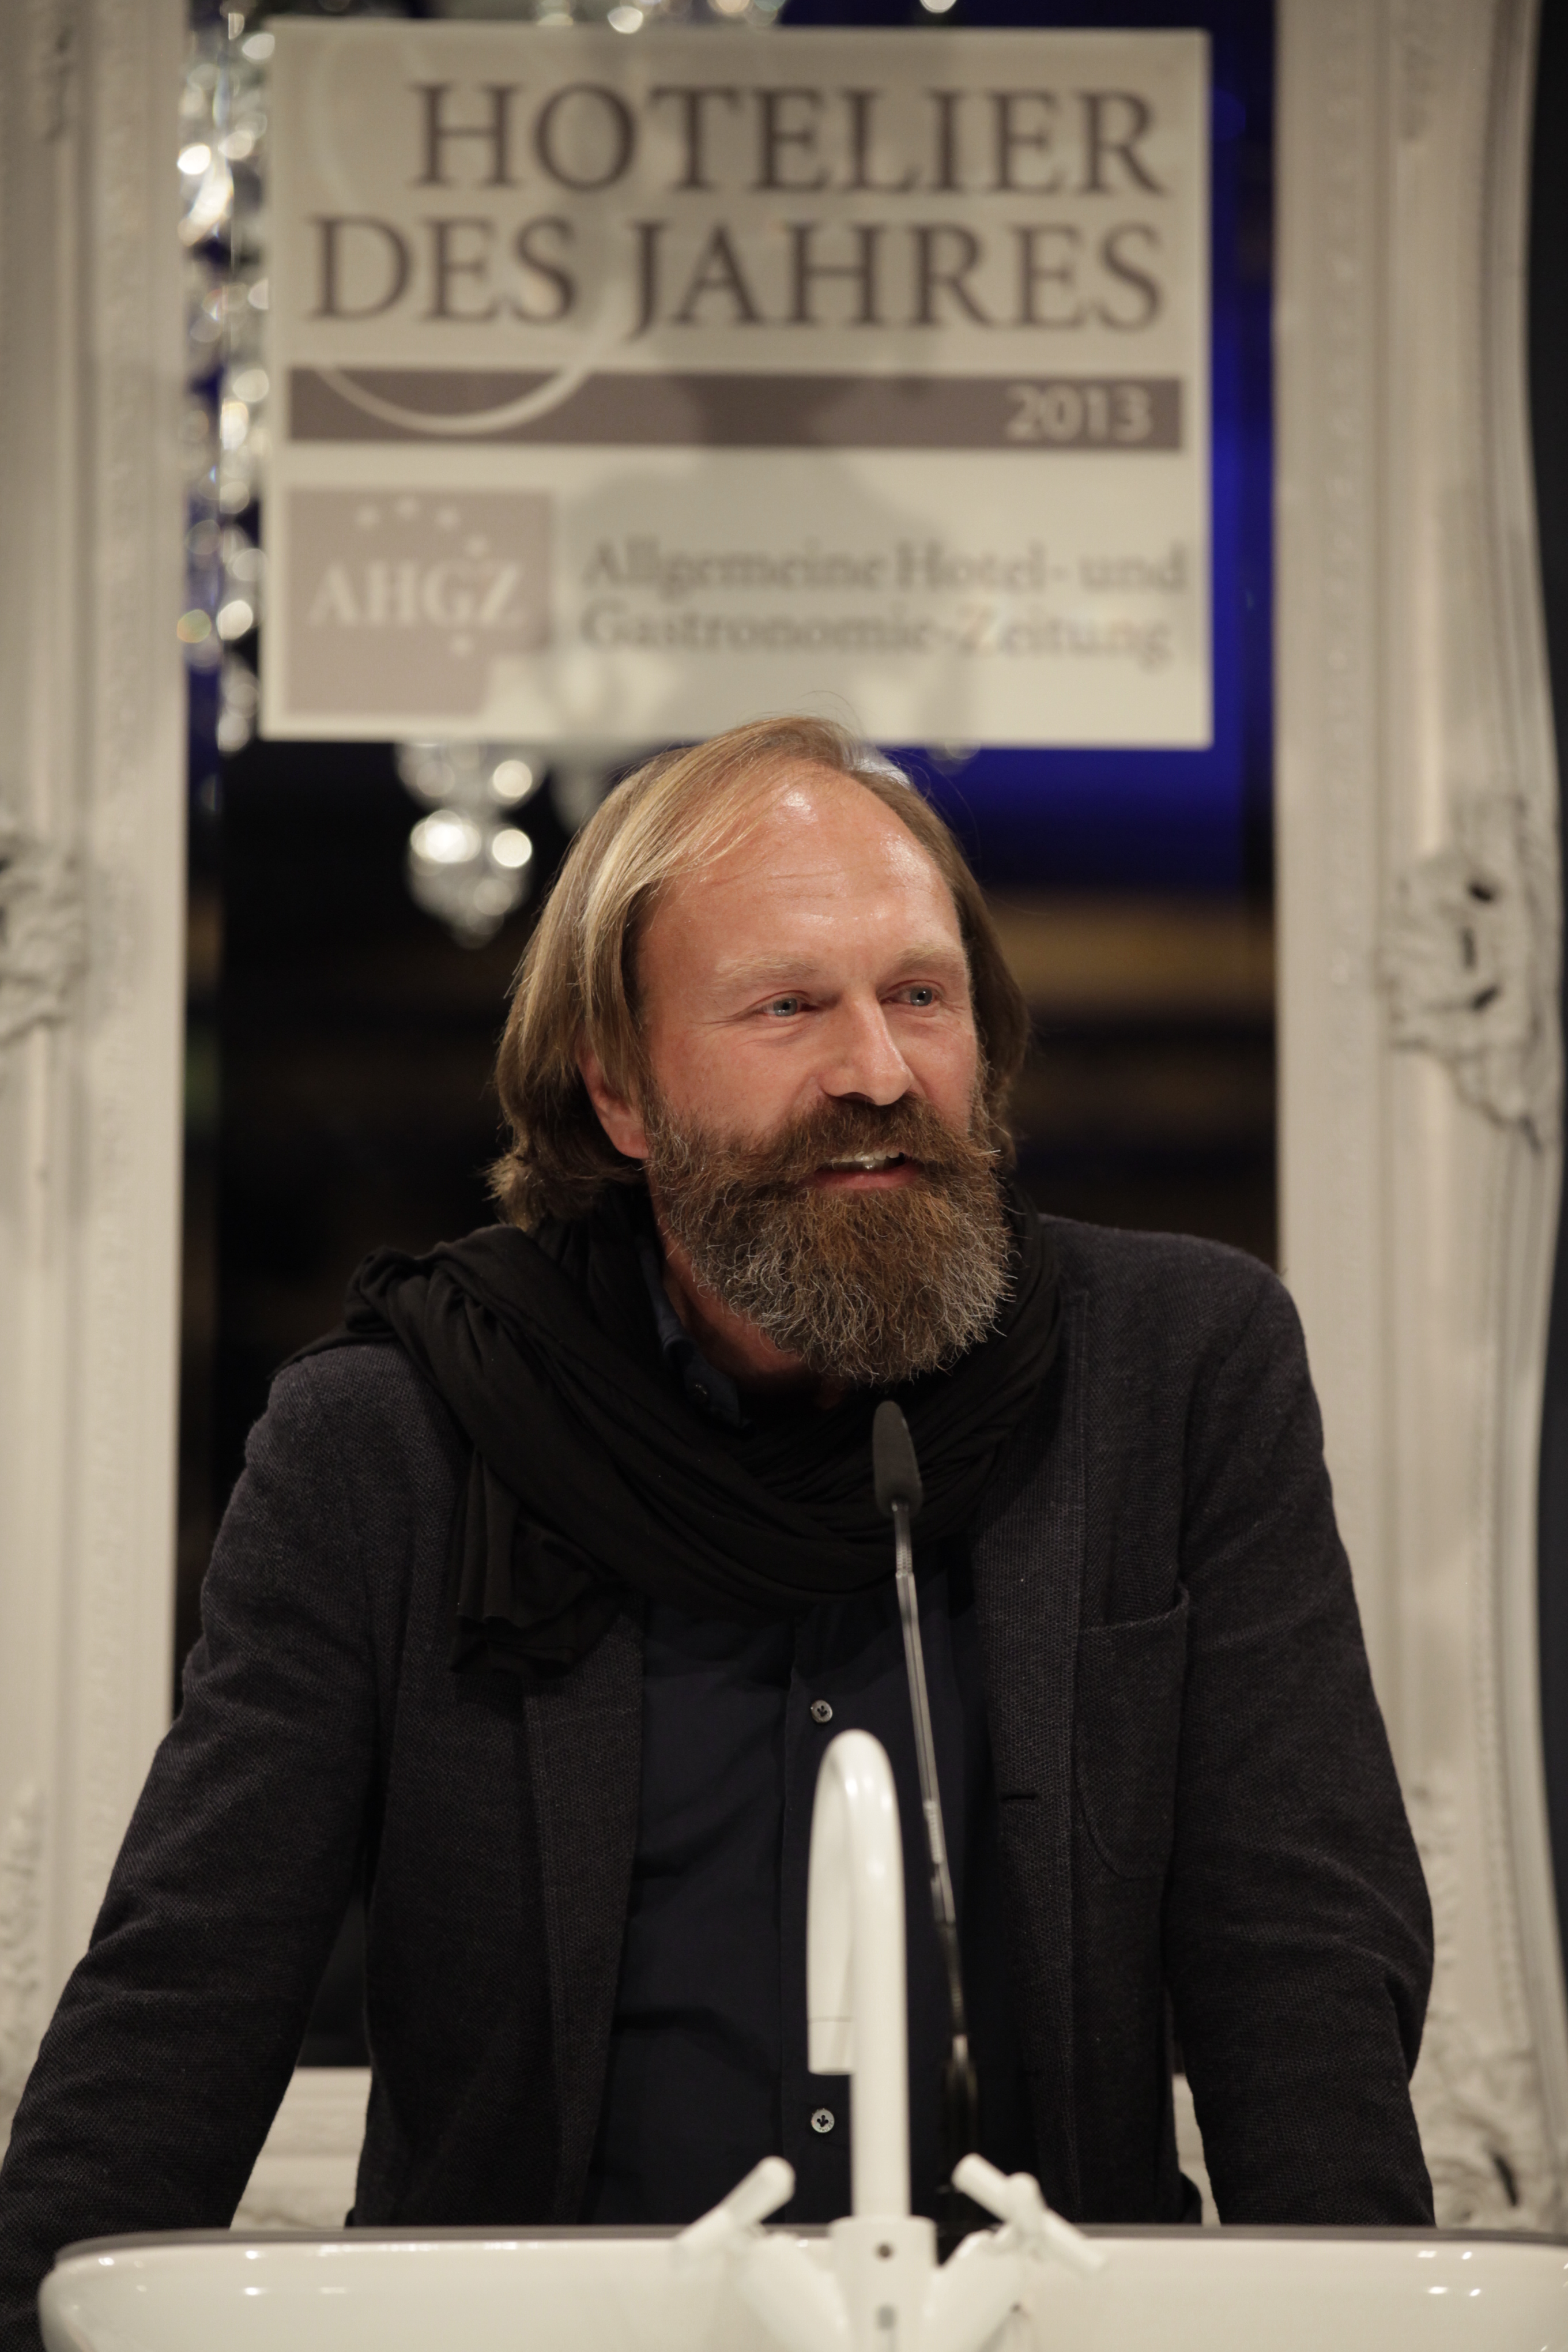 Hotelier des Jahres 2013 - Gewinner des Special Award: Claus Sendlinger (Design Hotels AG)  - (Foto: Thomas Fedra, AHGZ)